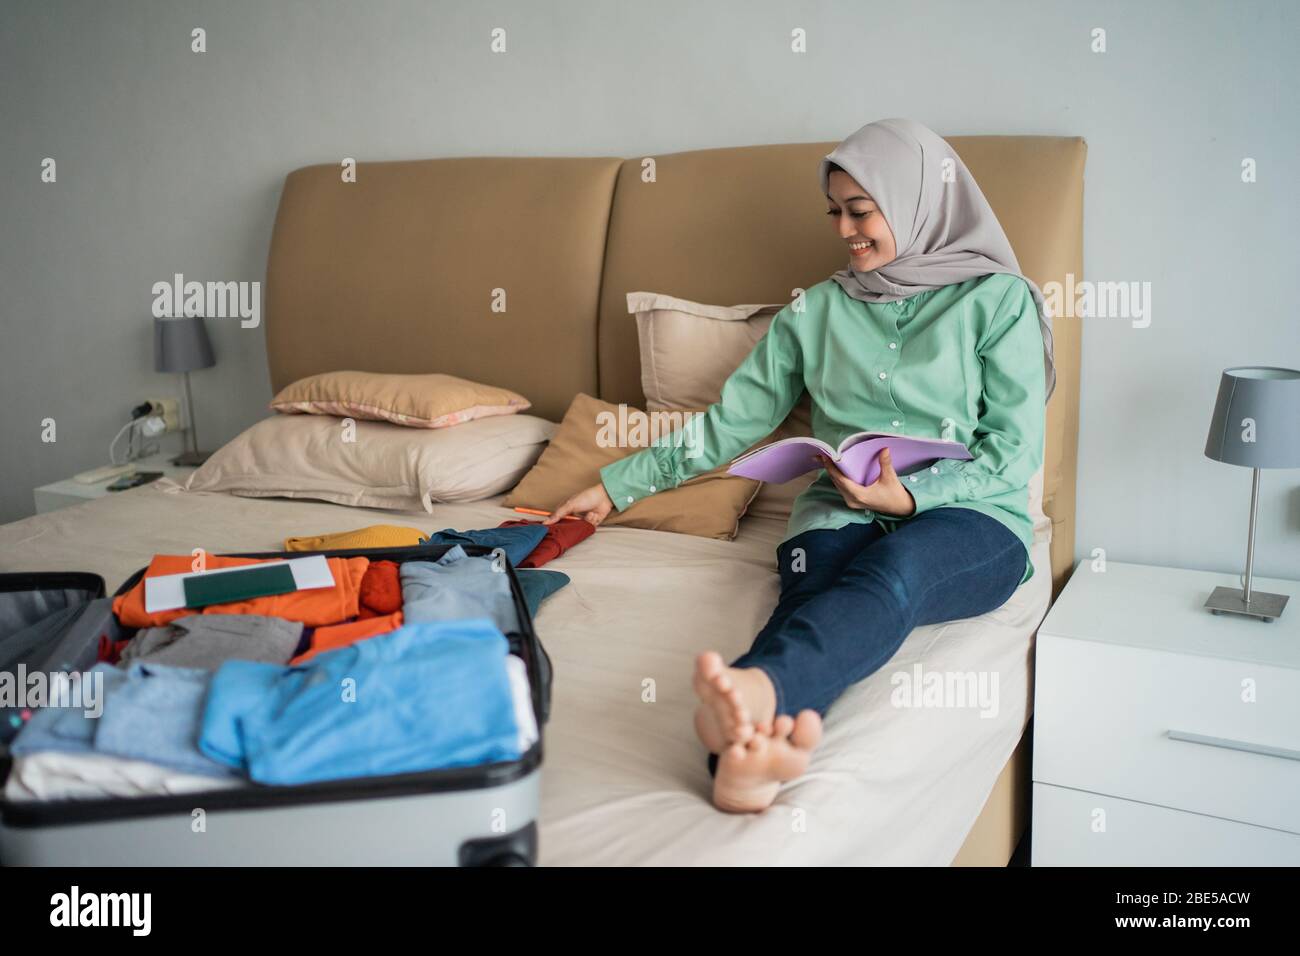 Verschleierte Frau, die auf dem Bett sitzt, während sie die Liste der Gegenstände betrachtet, die im Urlaub weggenommen werden sollen Stockfoto